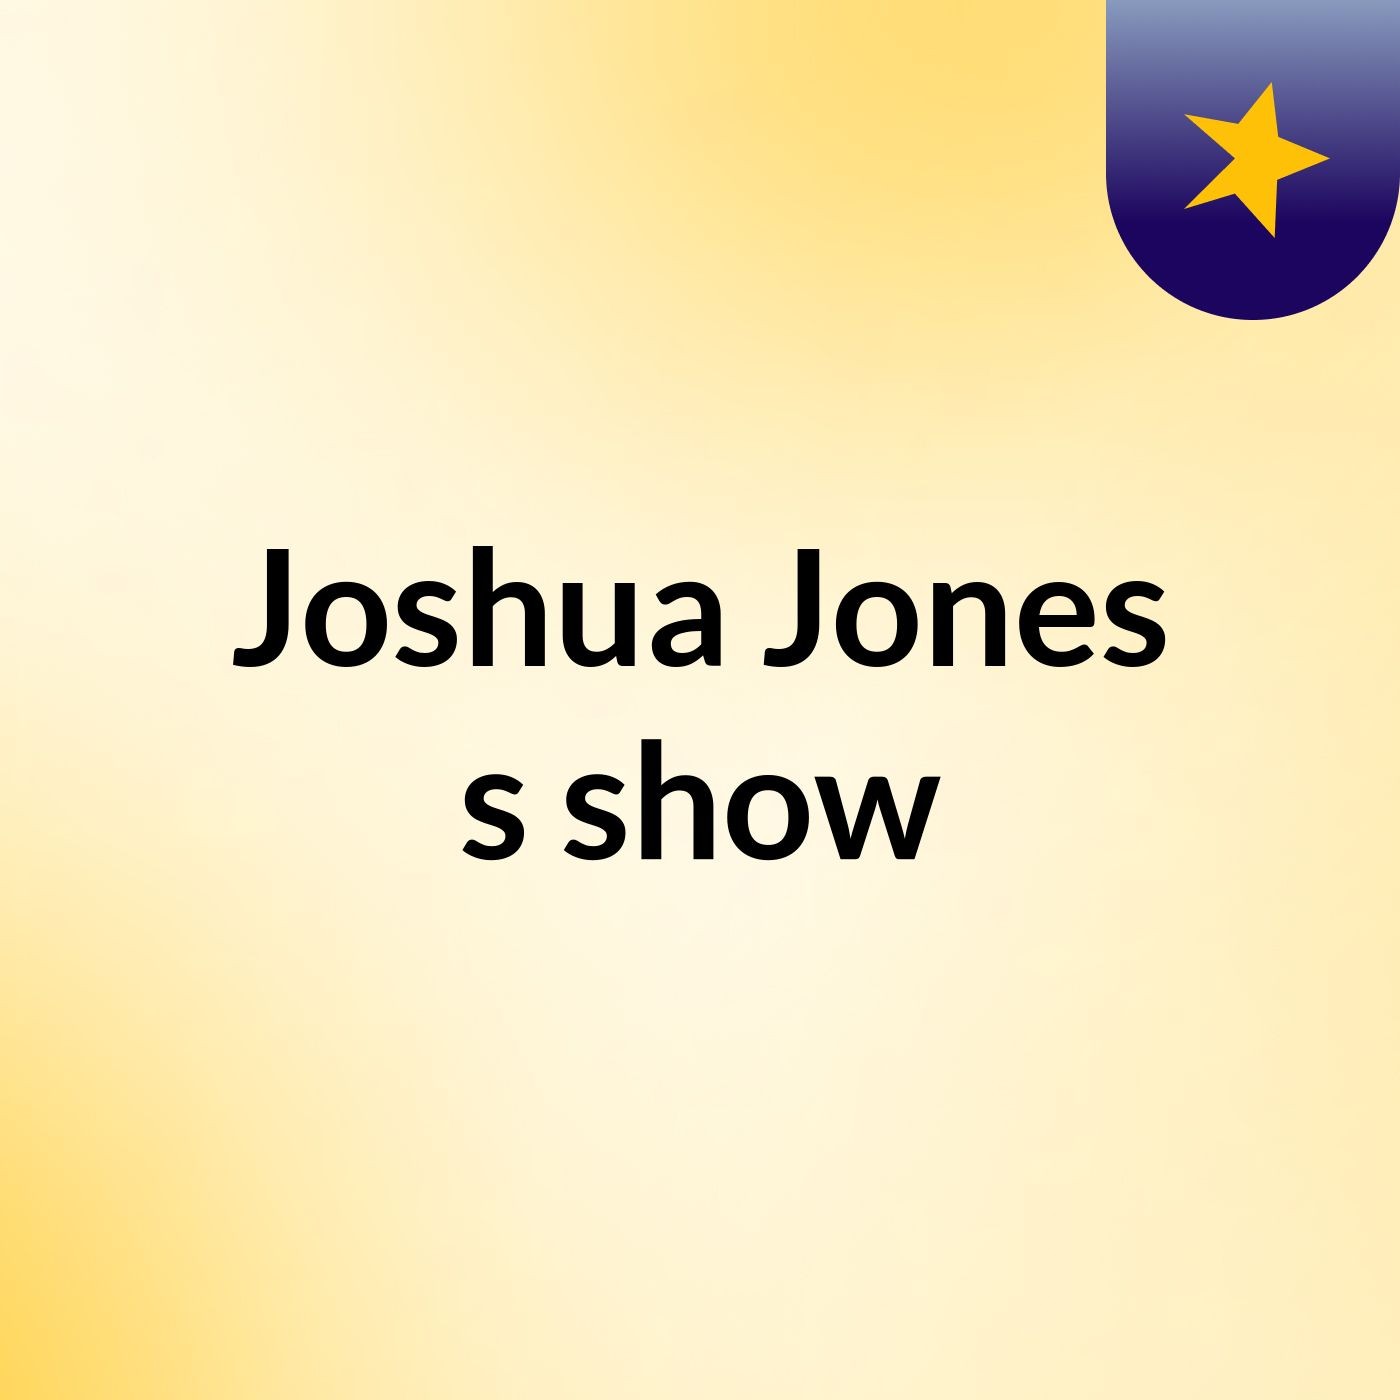 Episode 3 - Joshua Jones's show